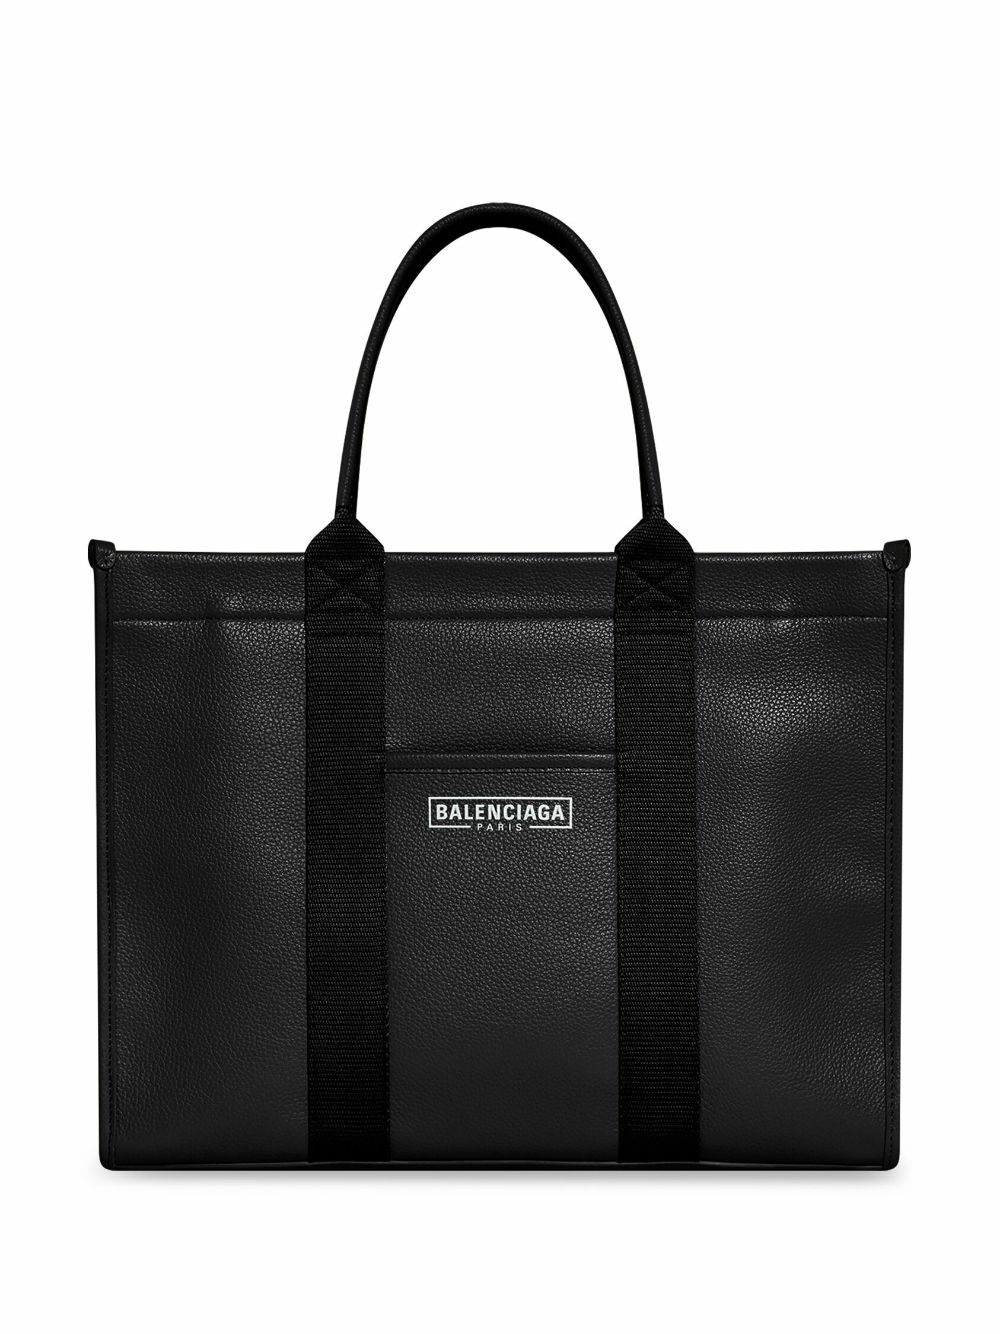 BALENCIAGA - Hardware Leather Tote Bag Balenciaga